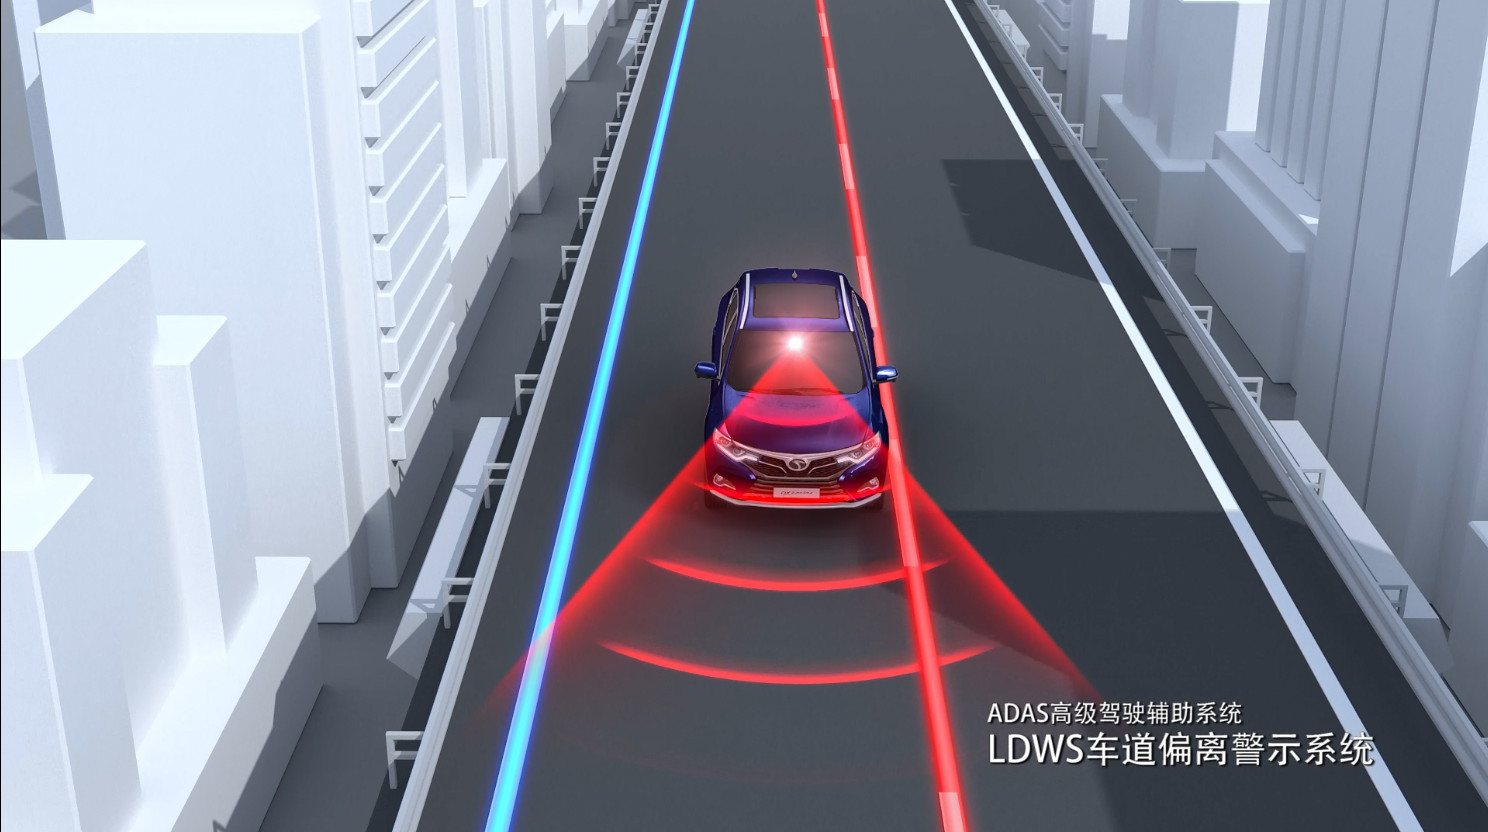 其中,ldws车道偏离警示系统能够在车辆偏离车道时,通过声音及视觉发出